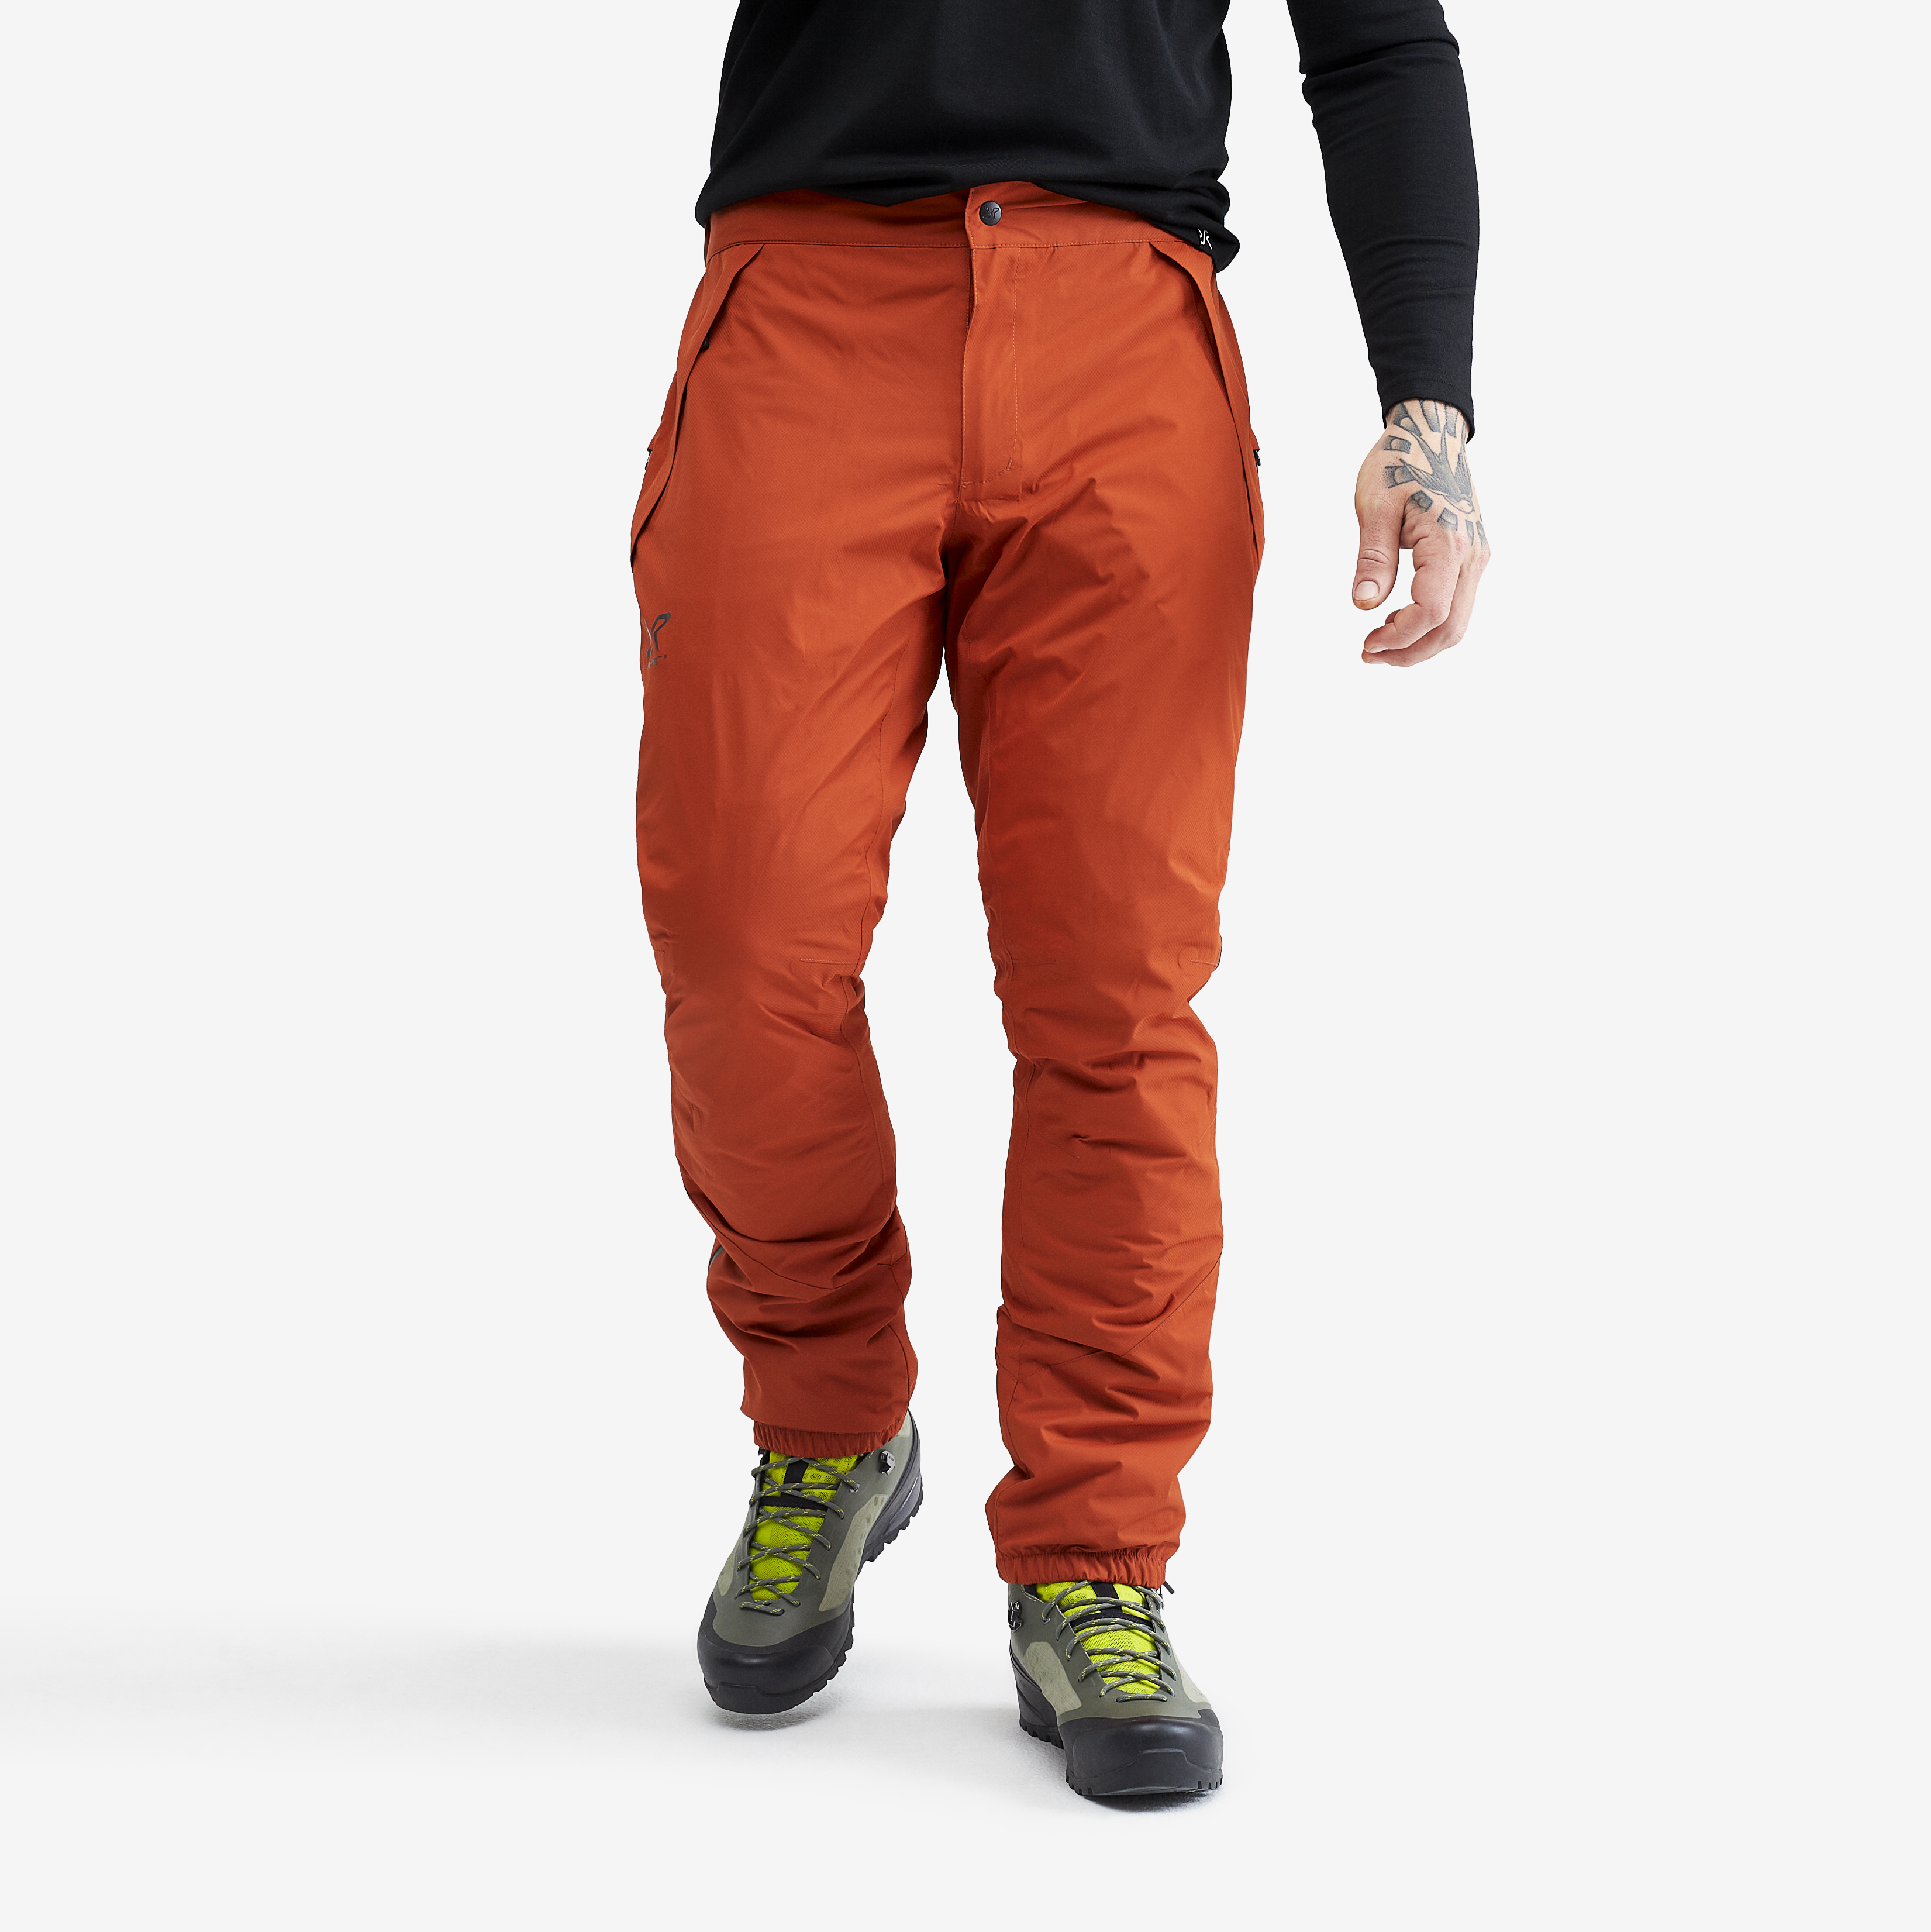 Typhoon nepromokavé kalhoty pro muže v oranžové barvě